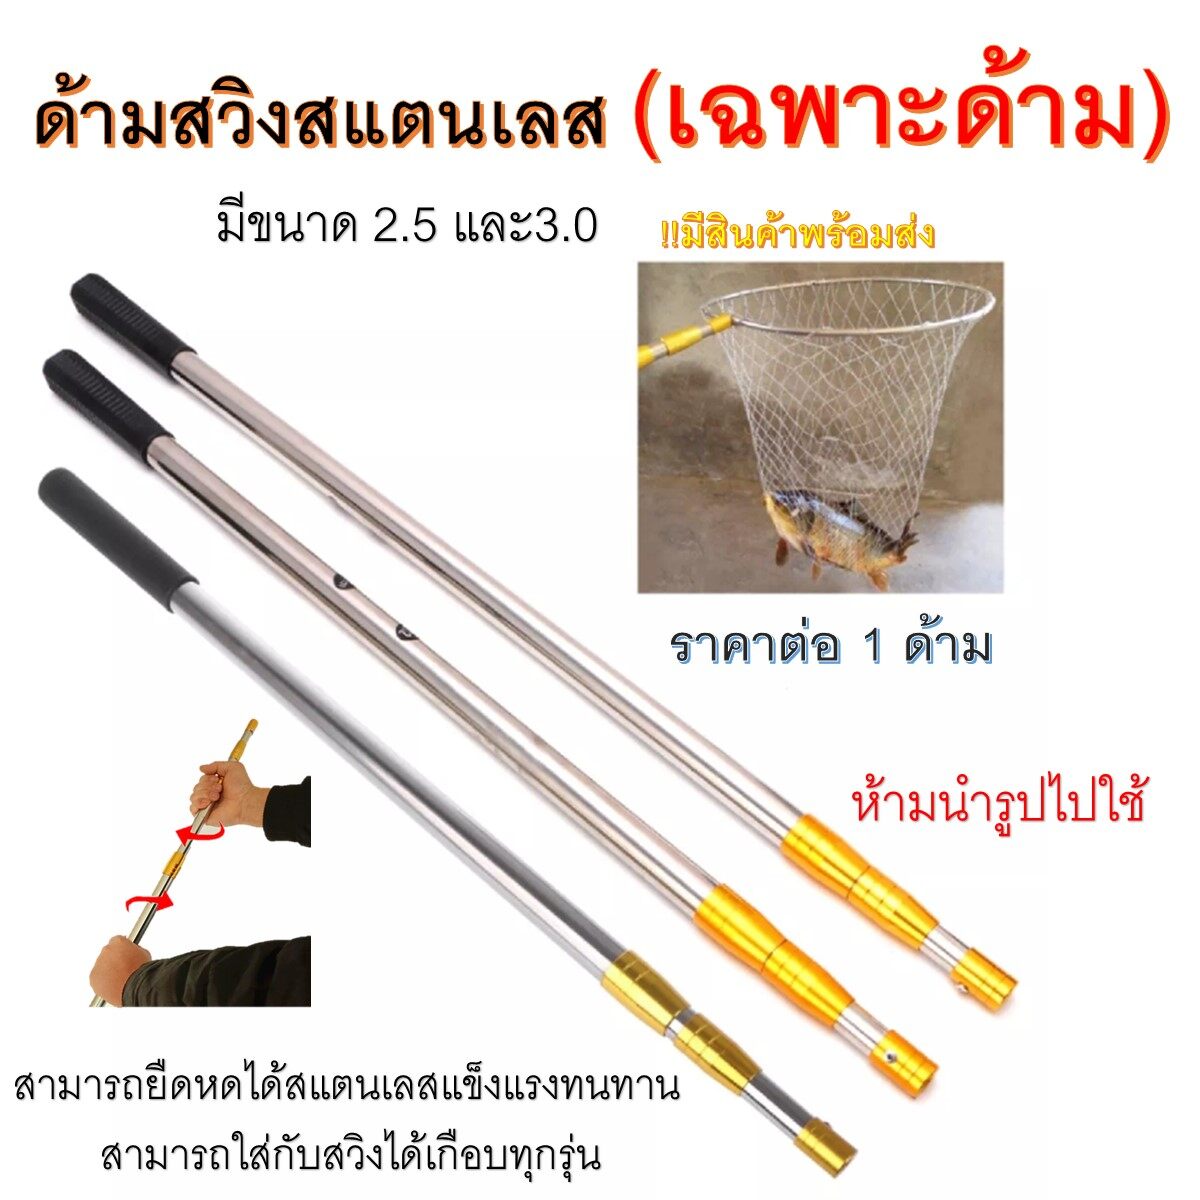 ส่งเร็วในไทย ด้ามสวิงสแตนเลส ด้ามทอง ด้ามเงิน (เฉพราะด้าม) 1 ด้าม !!มีสินค้าพร้อมส่ง) มีขนาดยาว 250 - 300 cm สวิงตักปลา